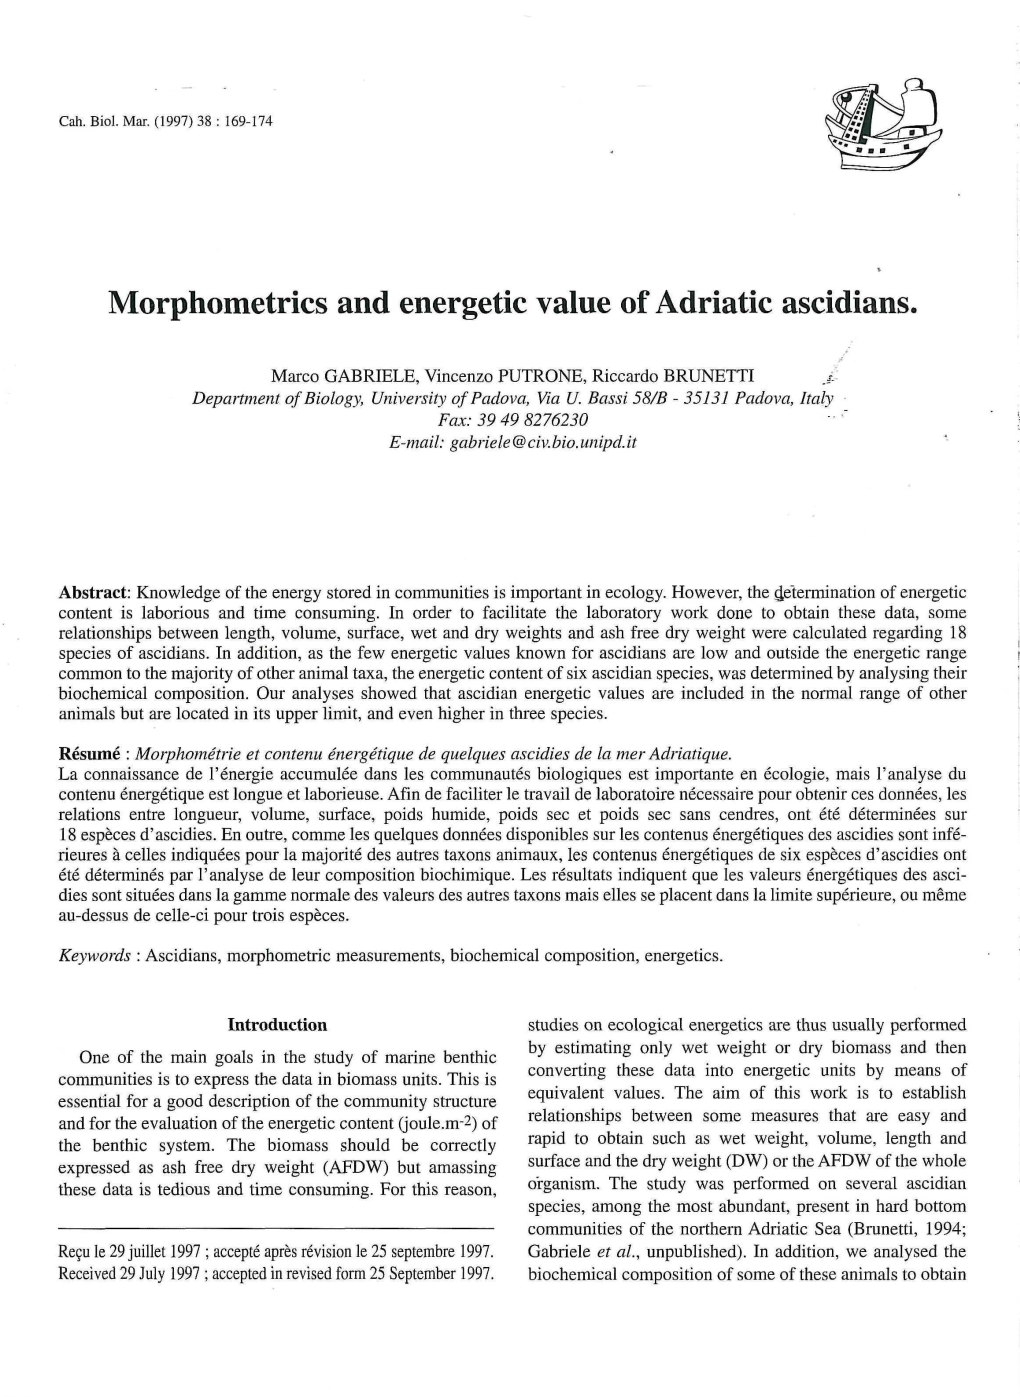 Morphometrics and Energetic Value of Adriatic Ascidians